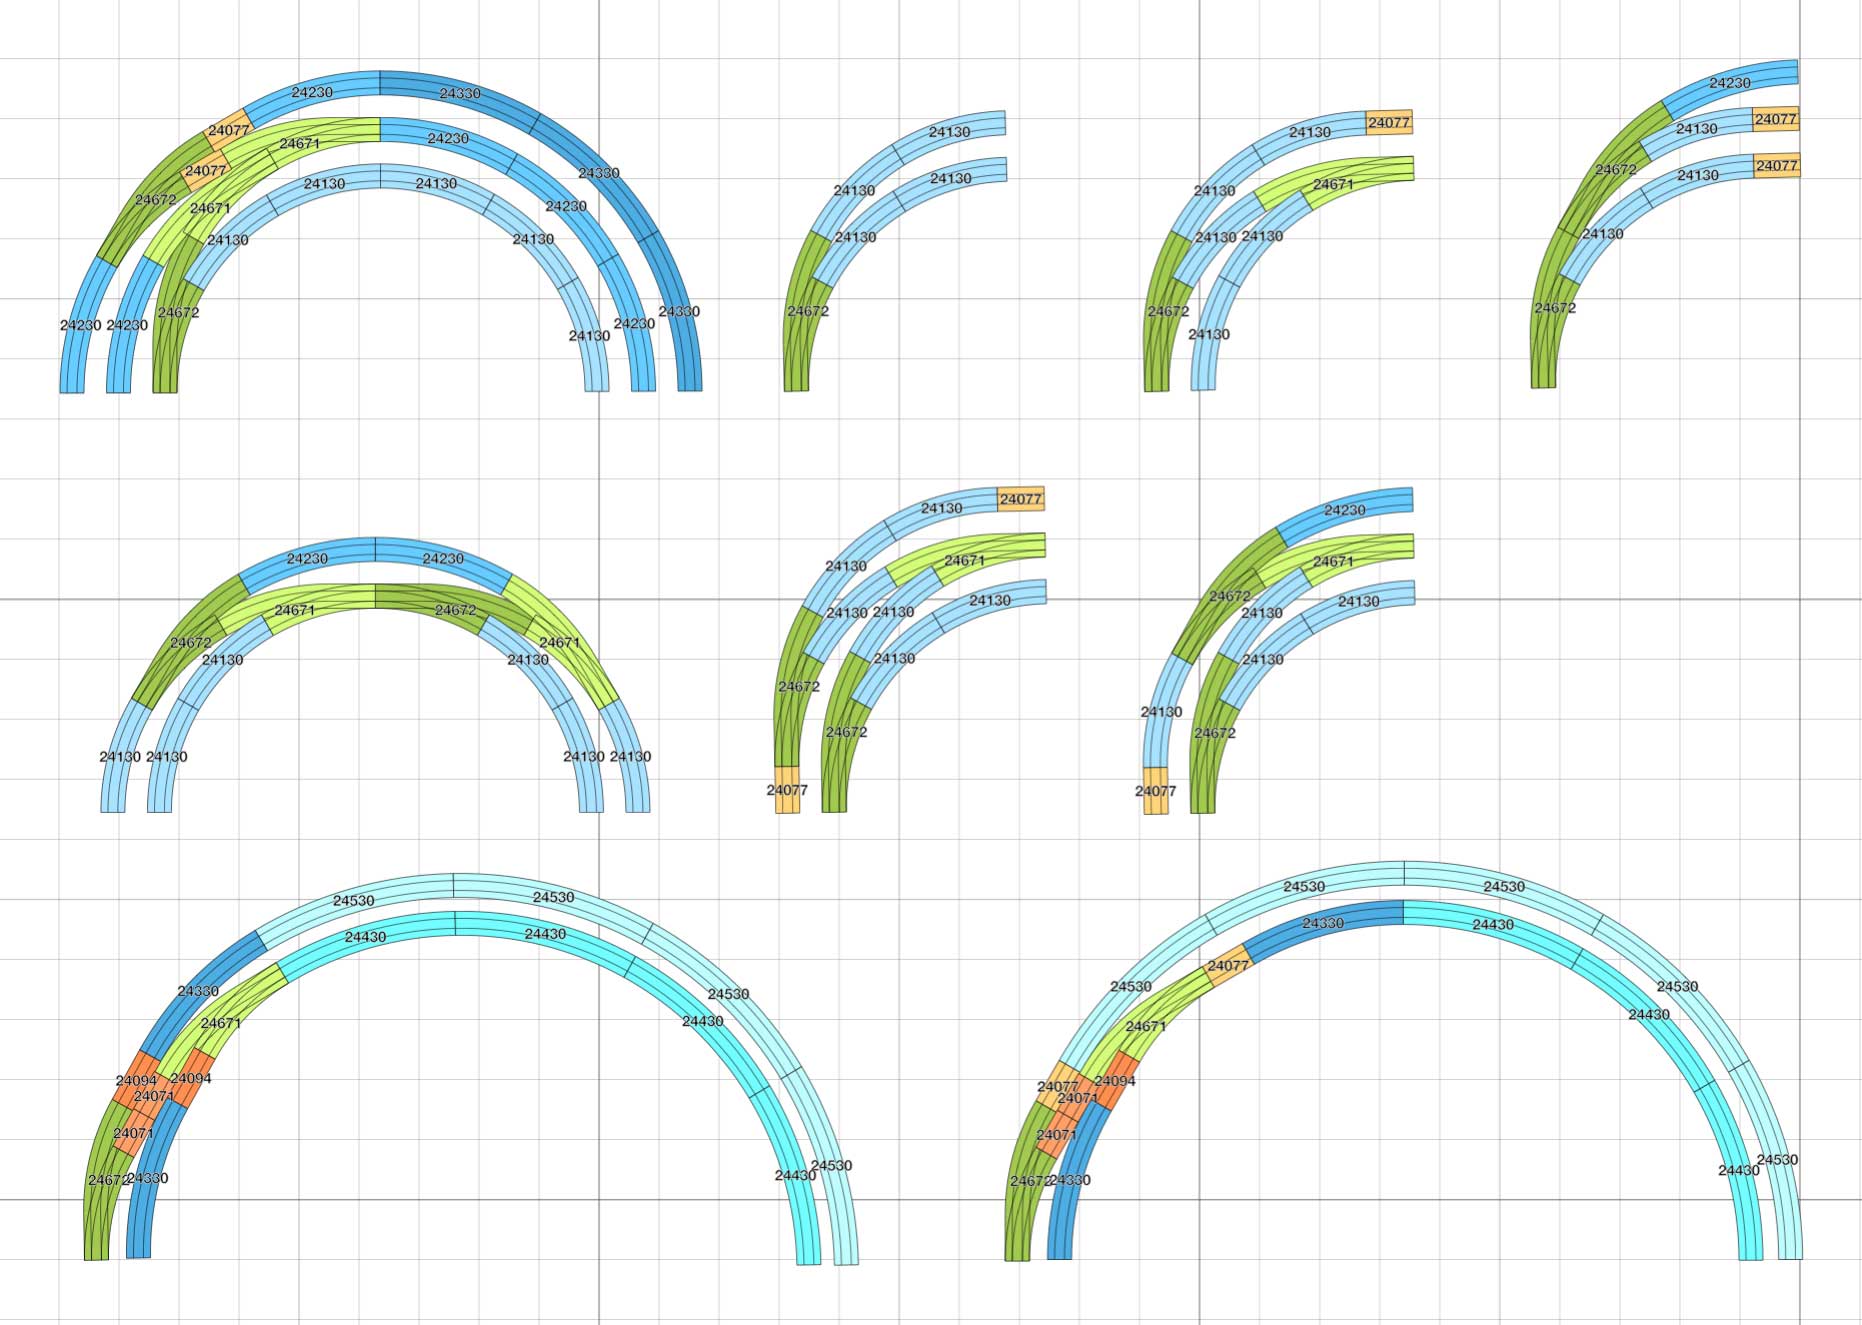 Märklin C-Gleis Geometrie: Anwendungsbeispiele der Märklin Bogenweiche